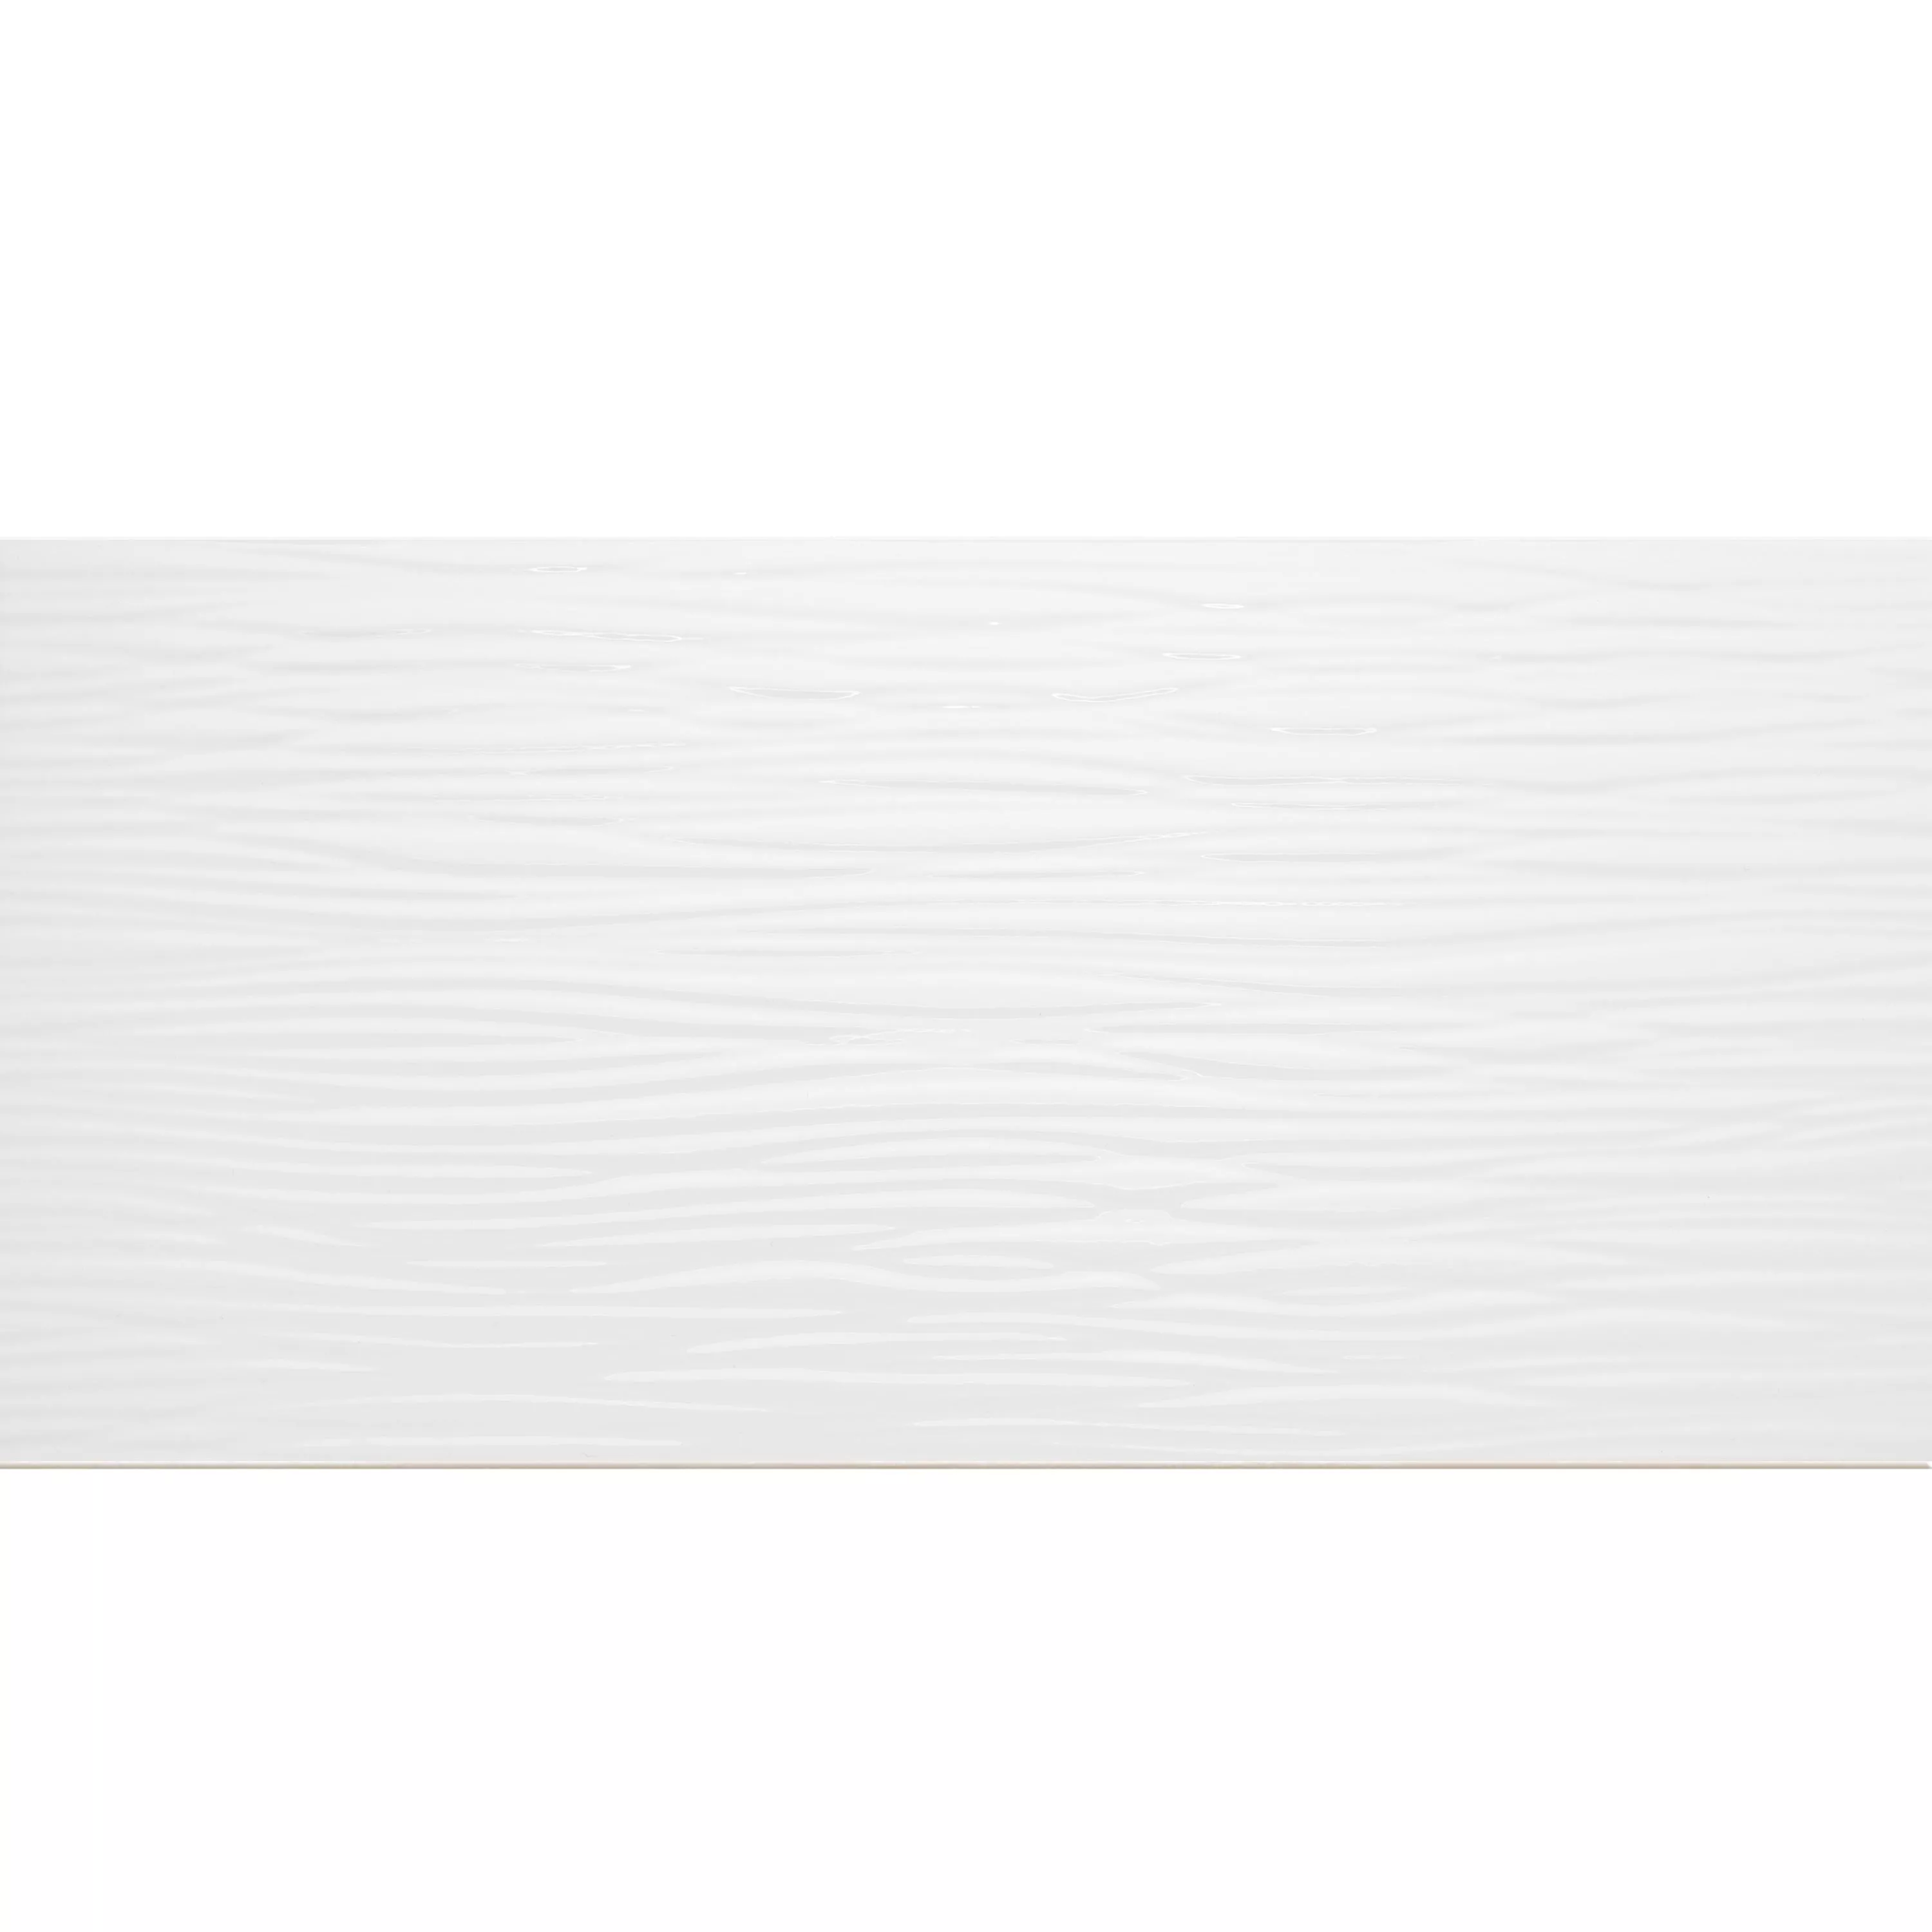 Muestra Revestimientos Norway Estructurado Brillante 25x50cm Blanco